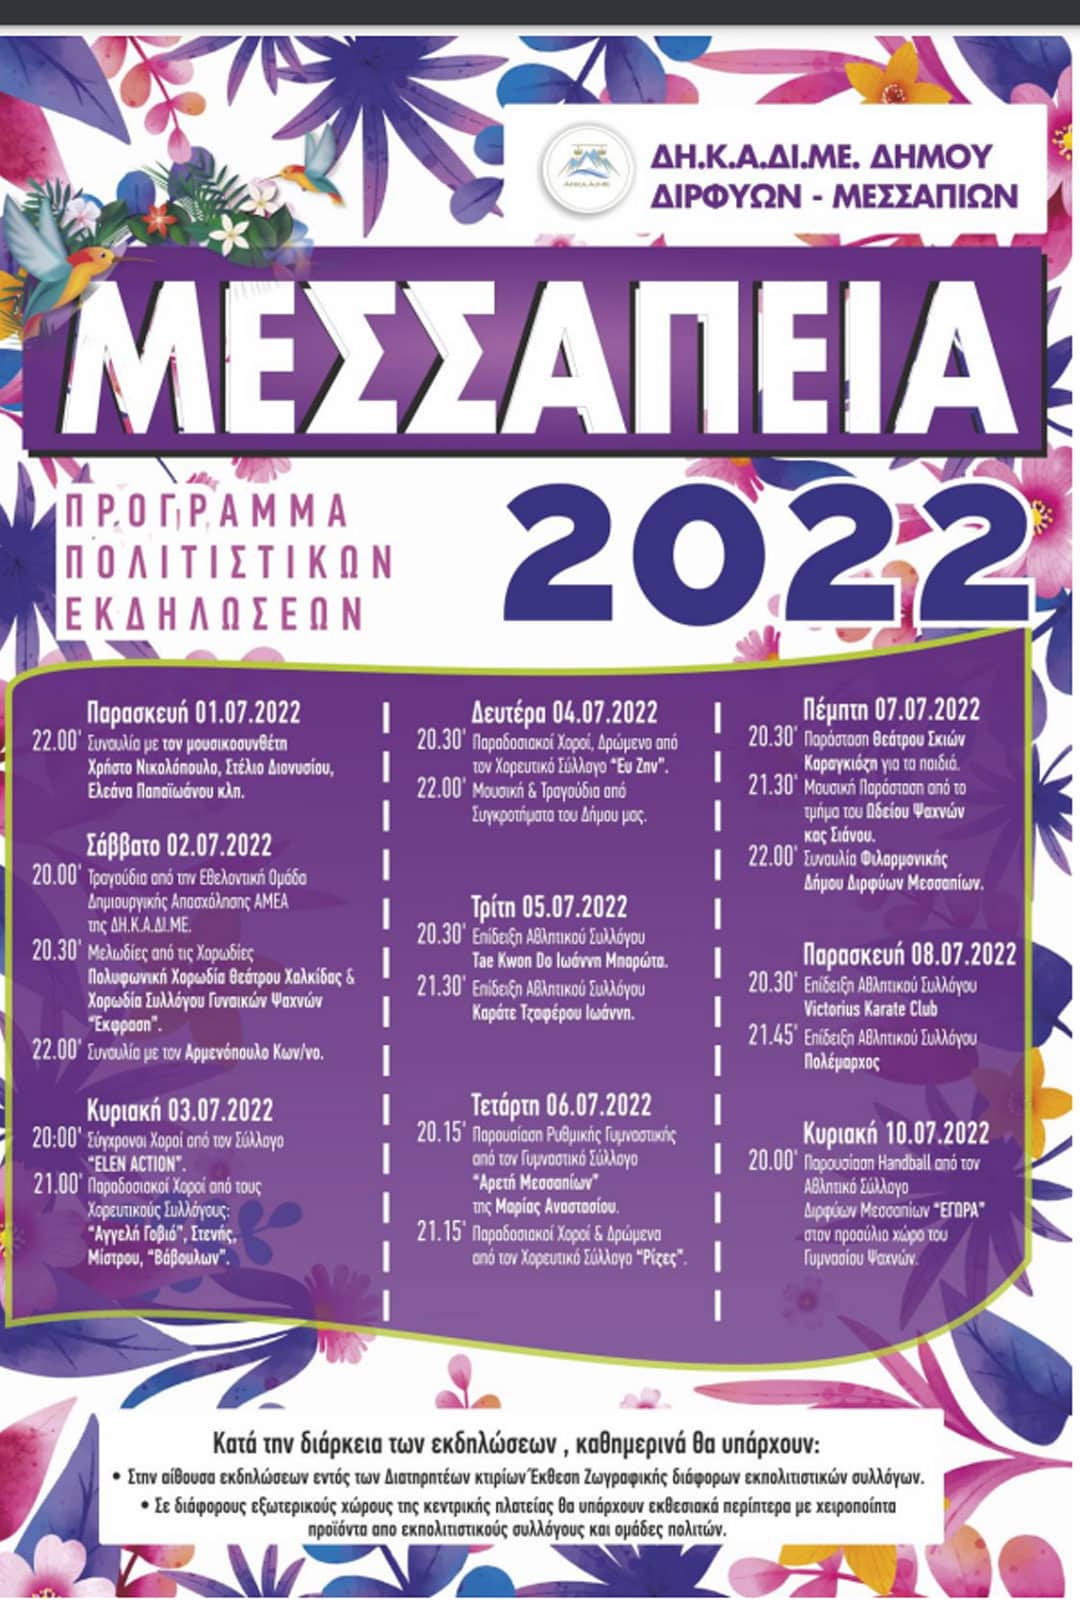 ΔΗΚΑΔΙΜΕ: Ξεκινούν τα Μεσσάπεια 2022